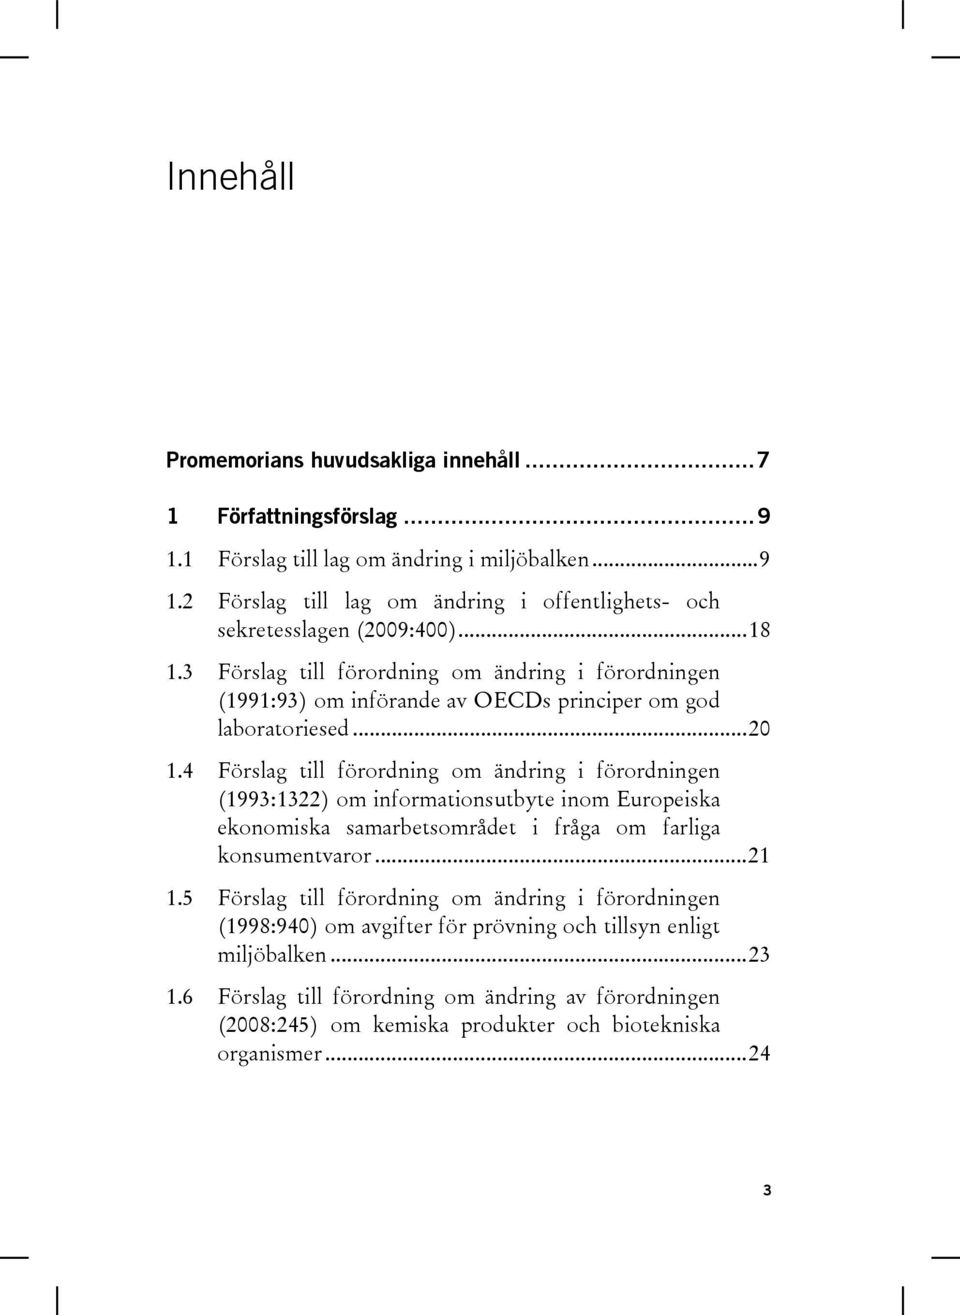 4 Förslag till förordning om ändring i förordningen (1993:1322) om informationsutbyte inom Europeiska ekonomiska samarbetsområdet i fråga om farliga konsumentvaror... 21 1.